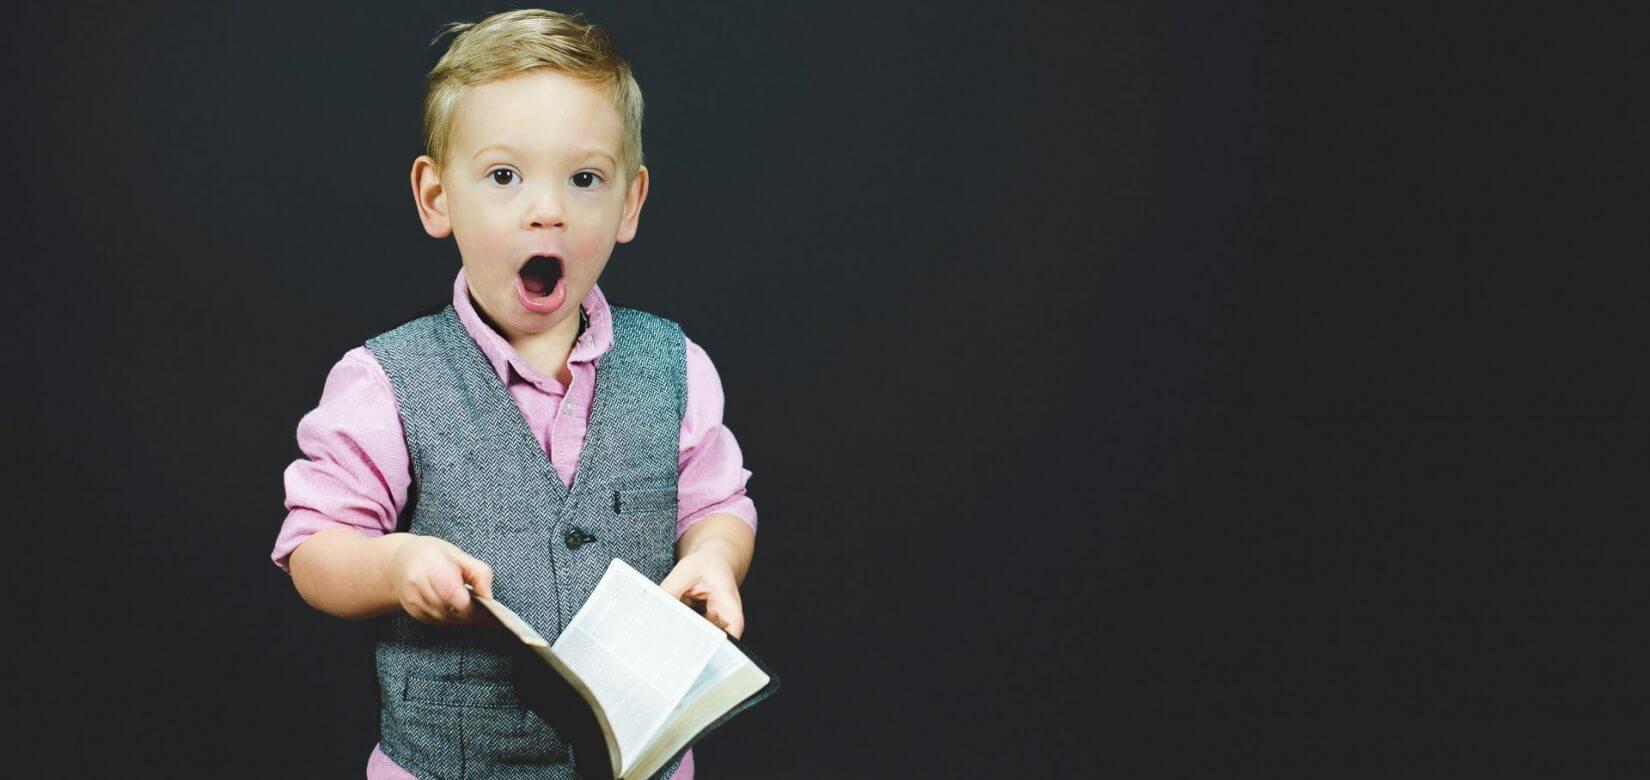 Διάβασμα στο σπίτι: Τί πρέπει να κάνουμε για να διαβάζουν τα παιδιά μόνα τους και καλά;